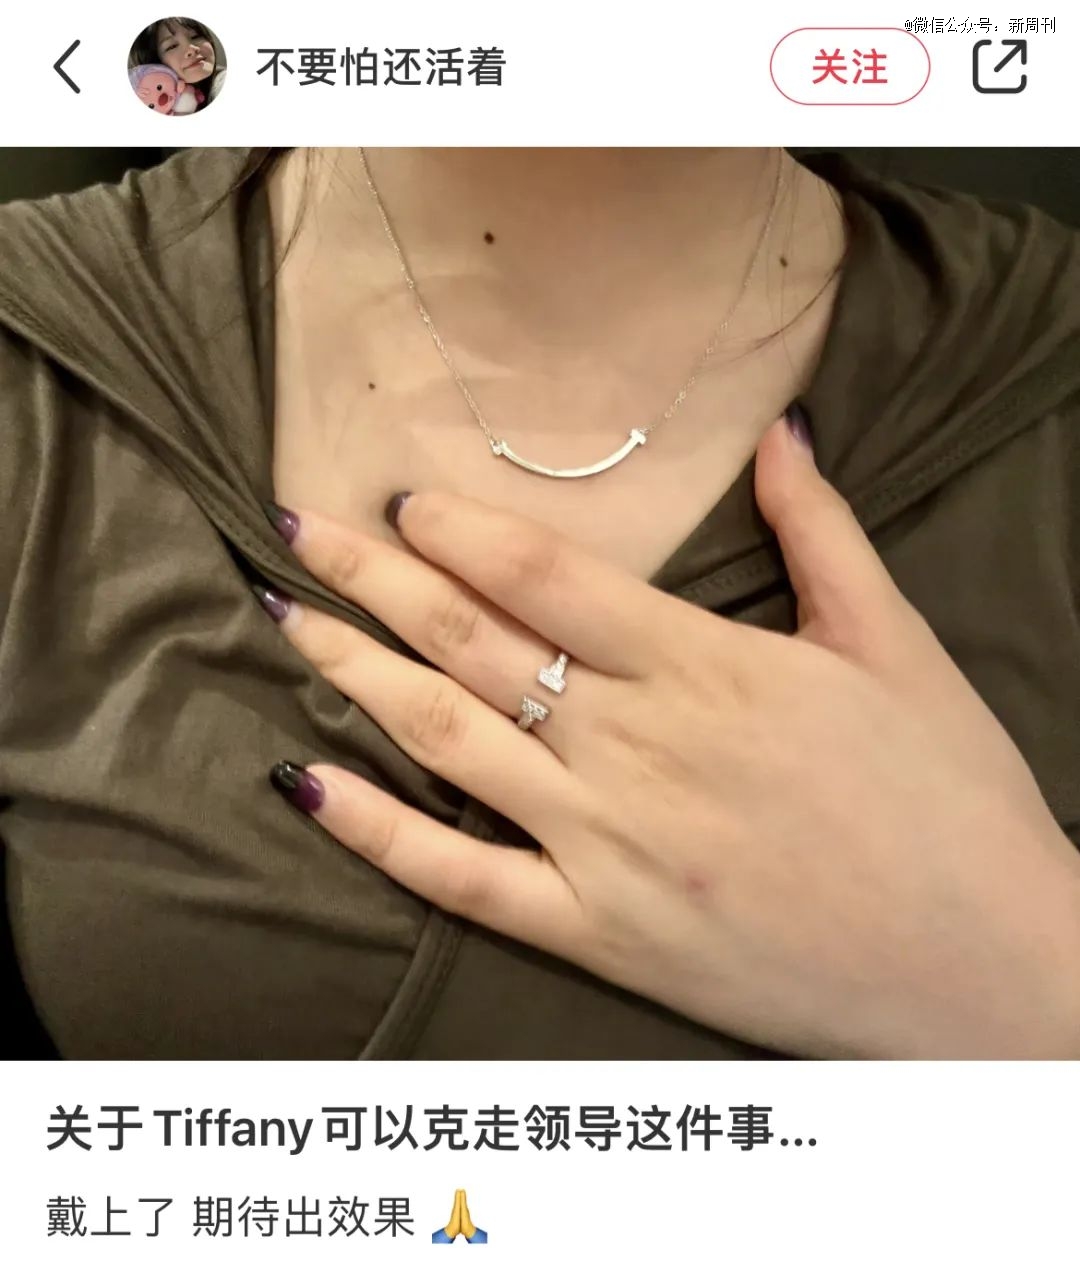 中国女孩重新捧红这珠宝，但没人为了爱情